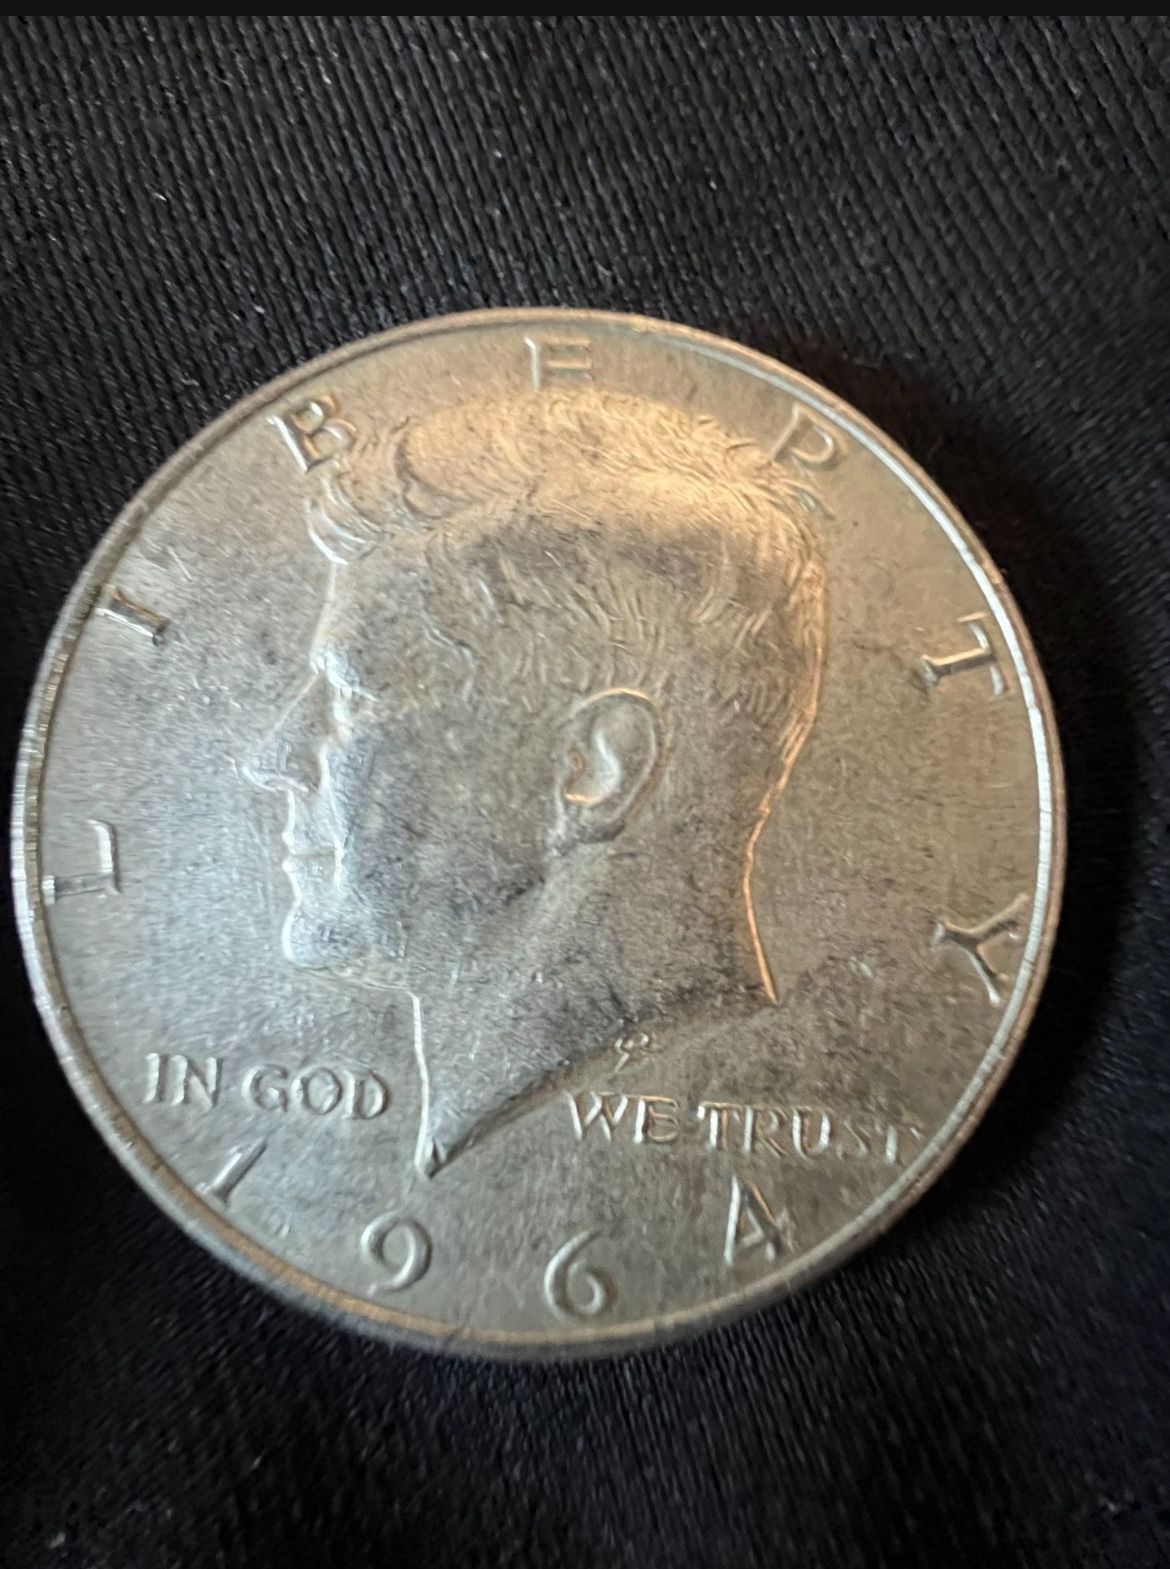 .90 Fine Silver Kennedy Half Dollar